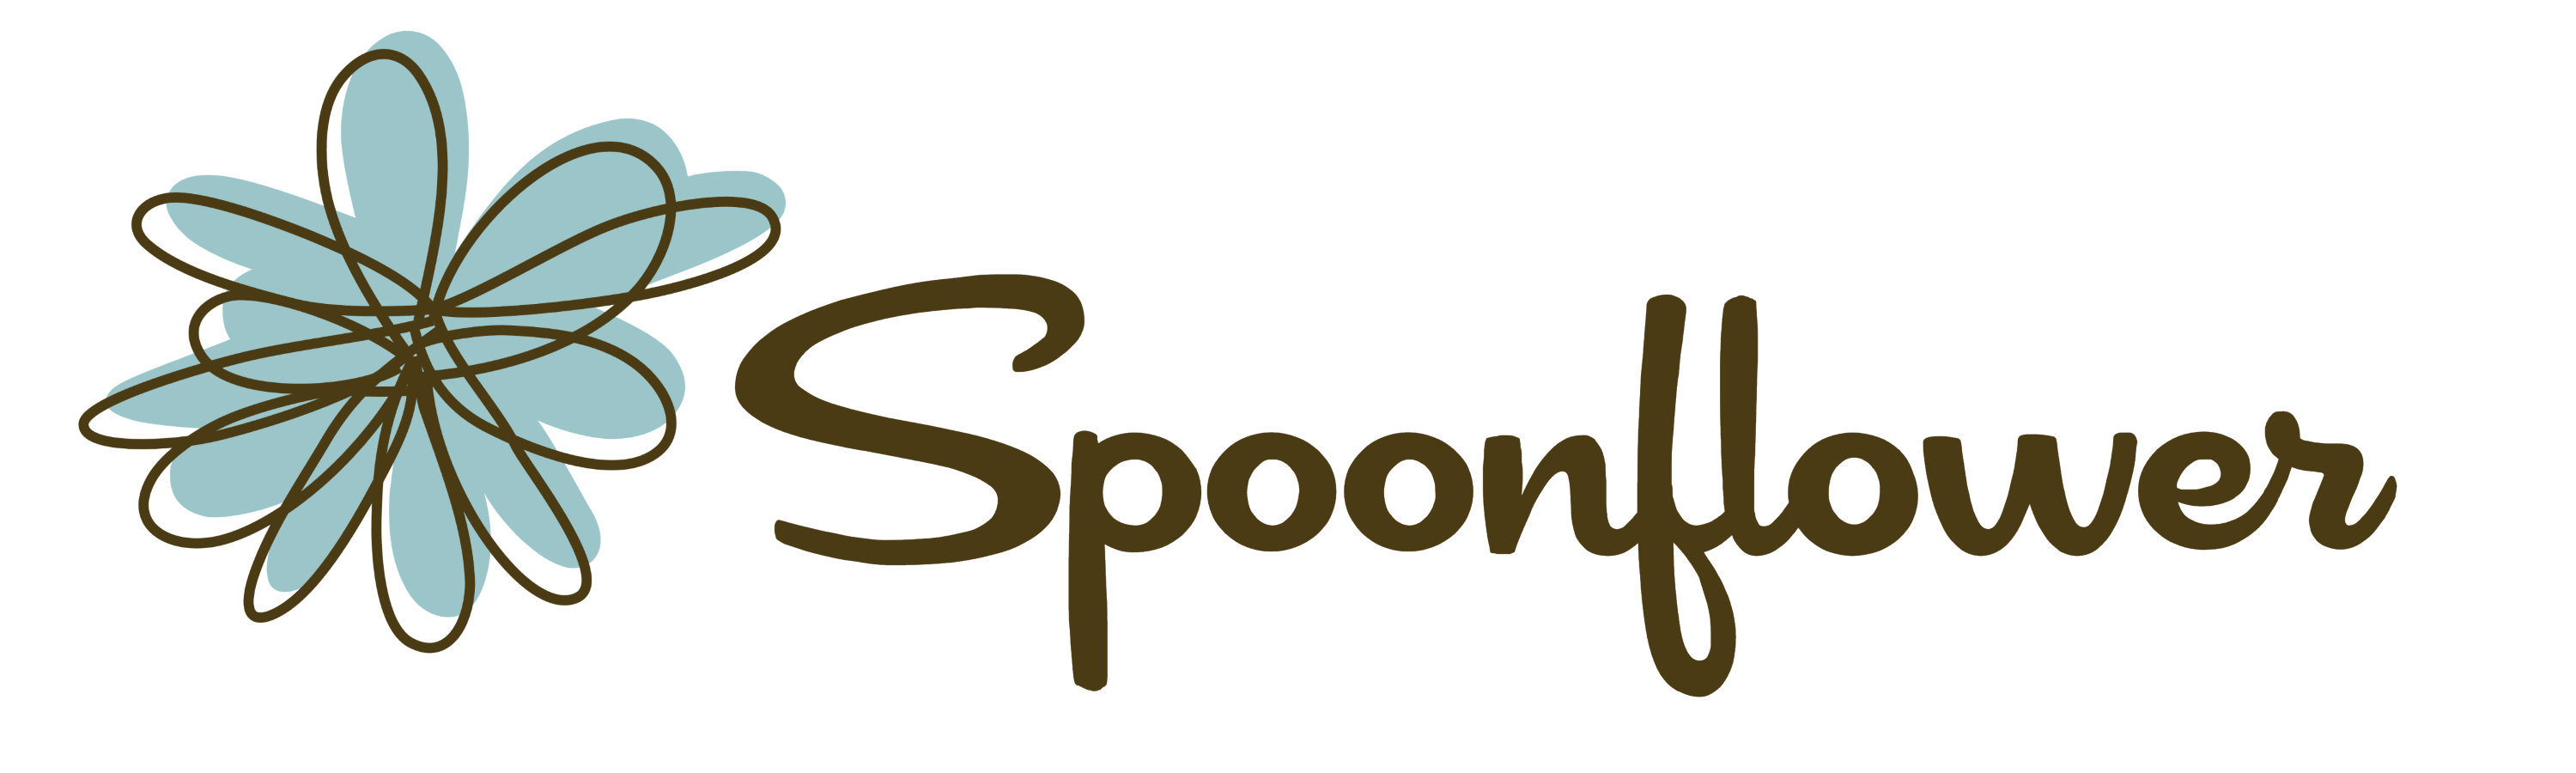 Spoonflower_logo